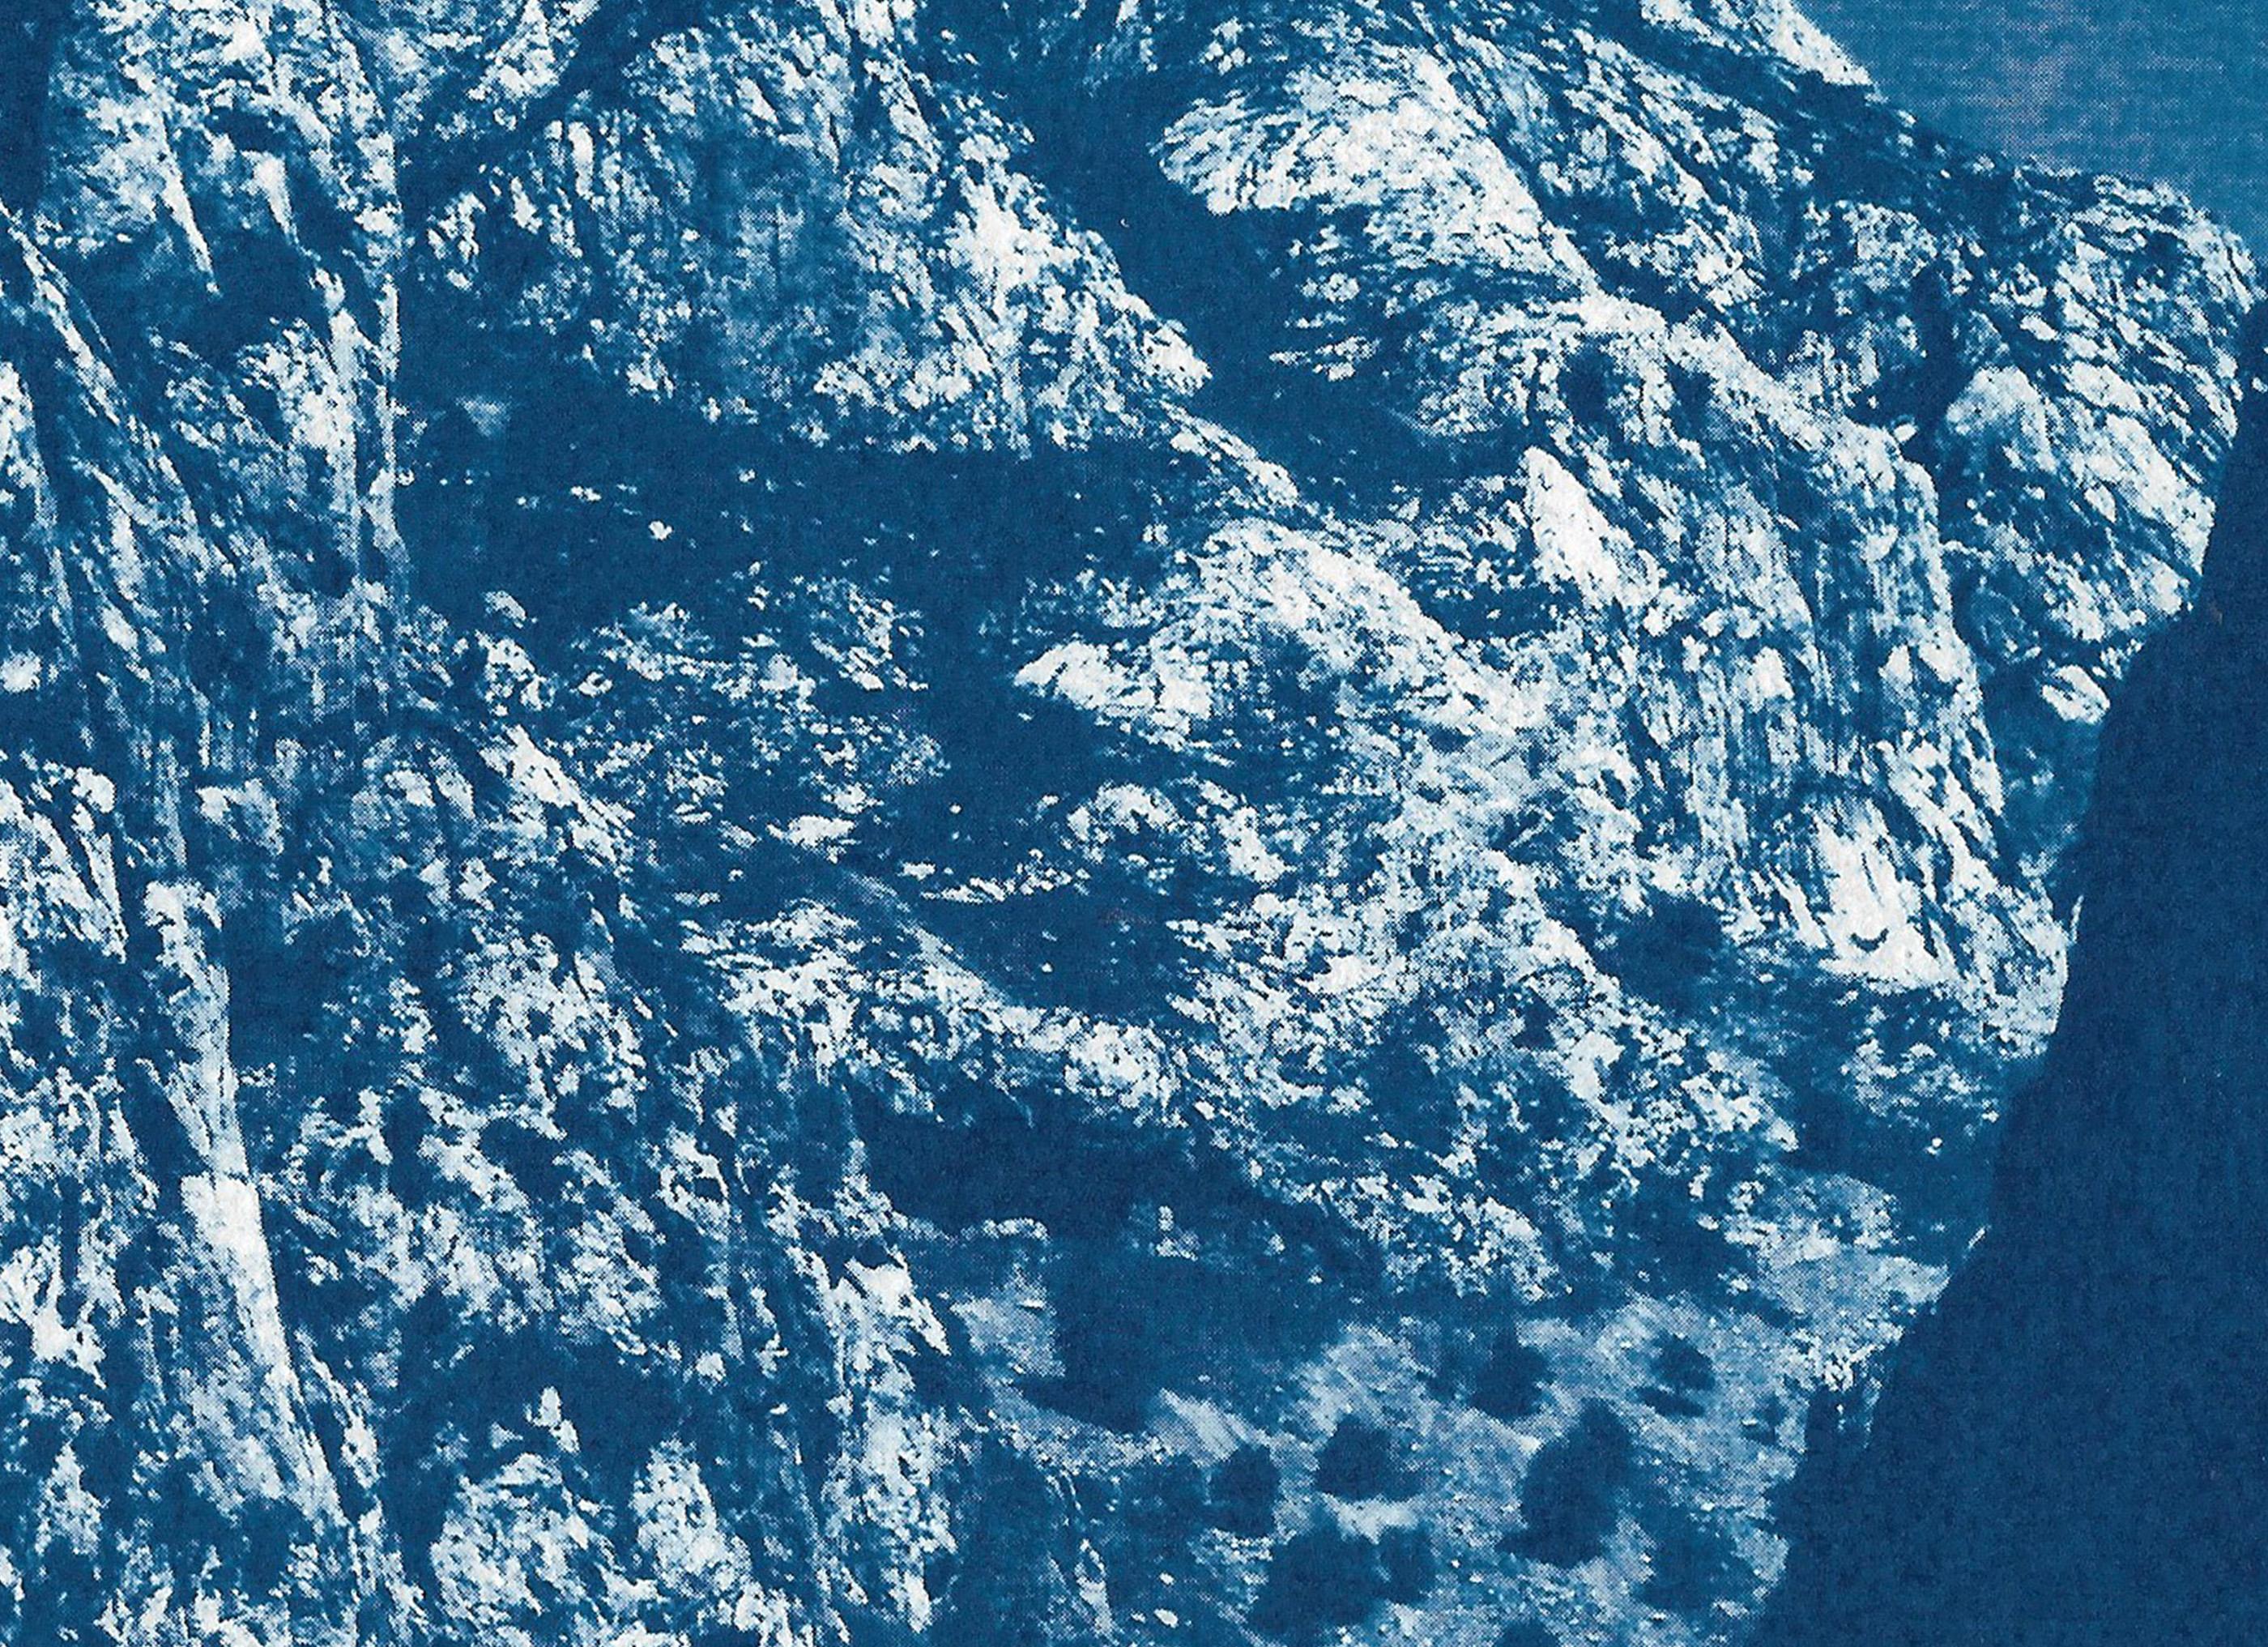 Dies ist eine exklusive handgedruckte Cyanotypie in limitierter Auflage.
Diese Cyanotypie zeigt einen der Berge im wunderschönen Yosemite National Park in Kalifornien.

Einzelheiten:
+ Titel: Yosemite Blue Mountain
+ Jahr: 2021
+ Auflagenhöhe: 100
+